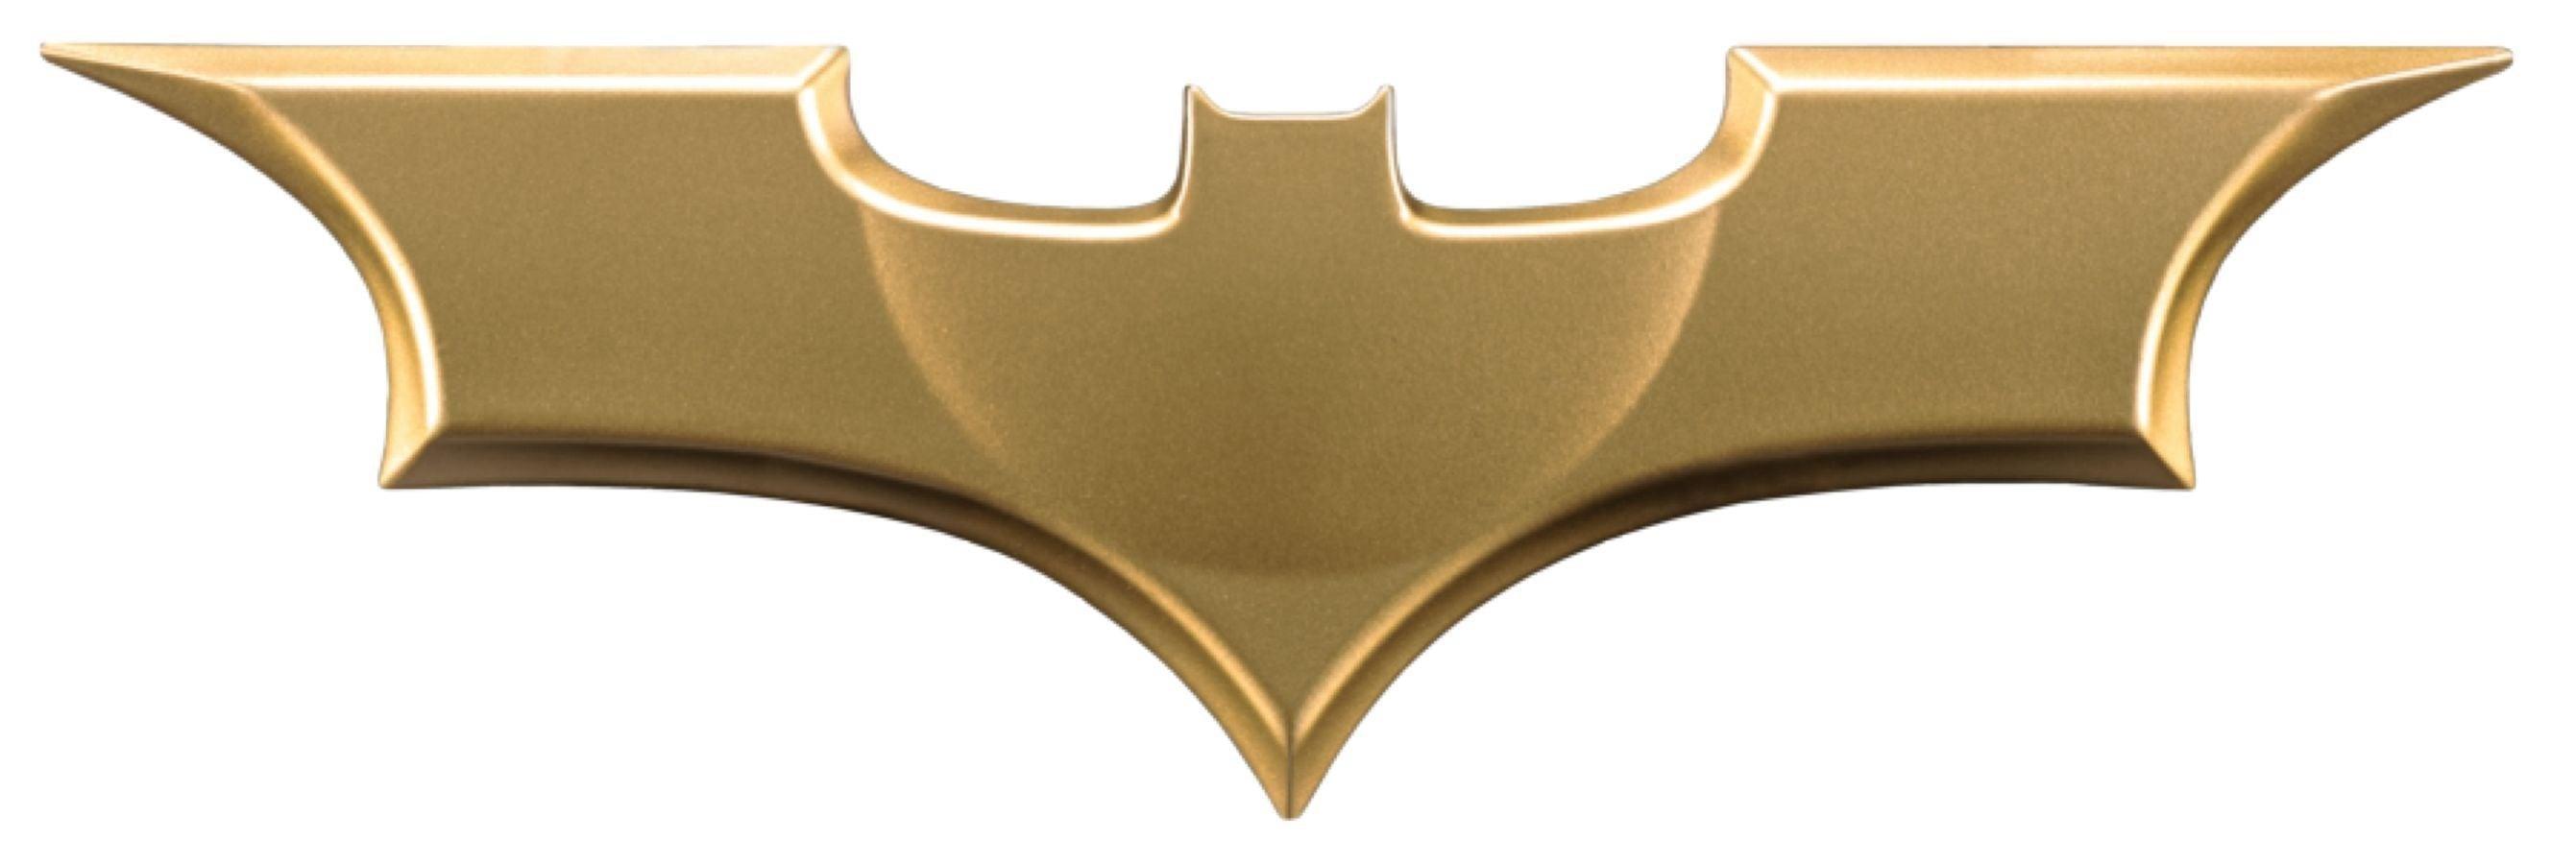 IKO1402 Batman Begins - Batarang Metal Replica - Ikon Collectables - Titan Pop Culture